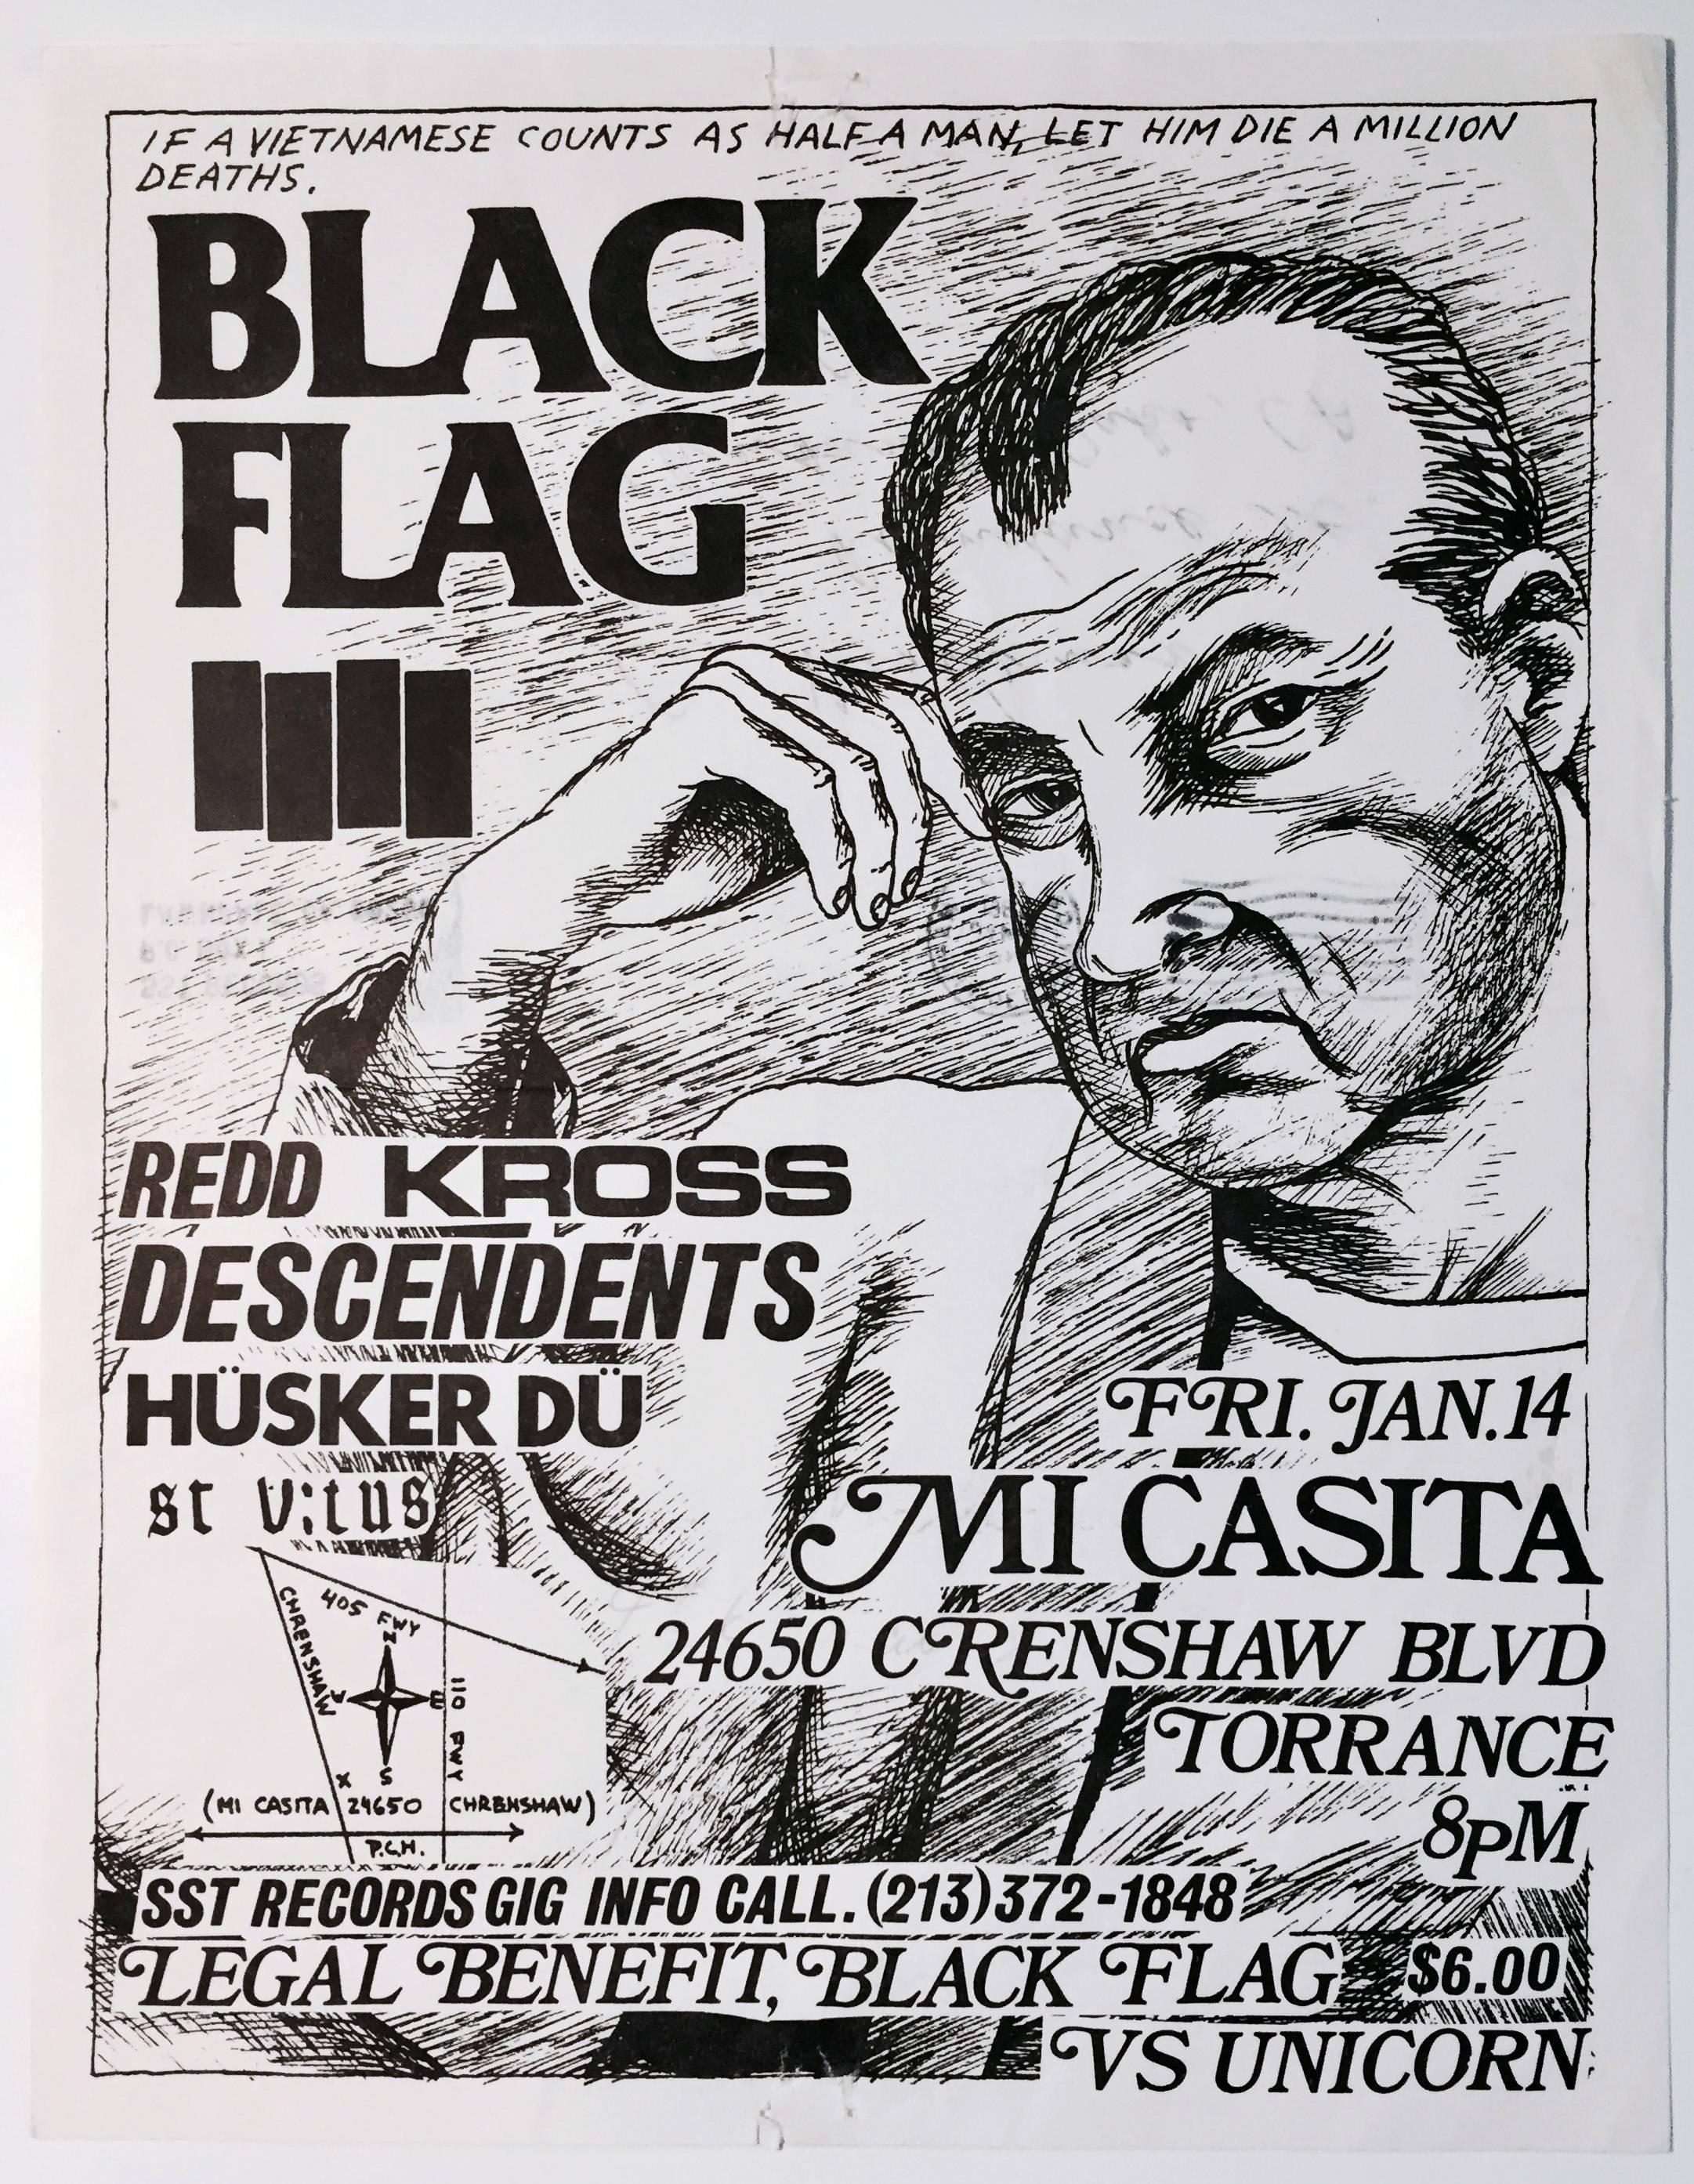 Raymond Pettibon Black Flag 1983 (tract punk) :
Black Flag à Mi Casita, 14 janvier 1983 : Imprimé en offset, 28 x 21,6 cm (11 x 8,5 in). Noir et blanc. Dépliant / flyer pour le spectacle de Black Flag, Redd Kross, Descendents, Hüsker Dü, St. Vitus